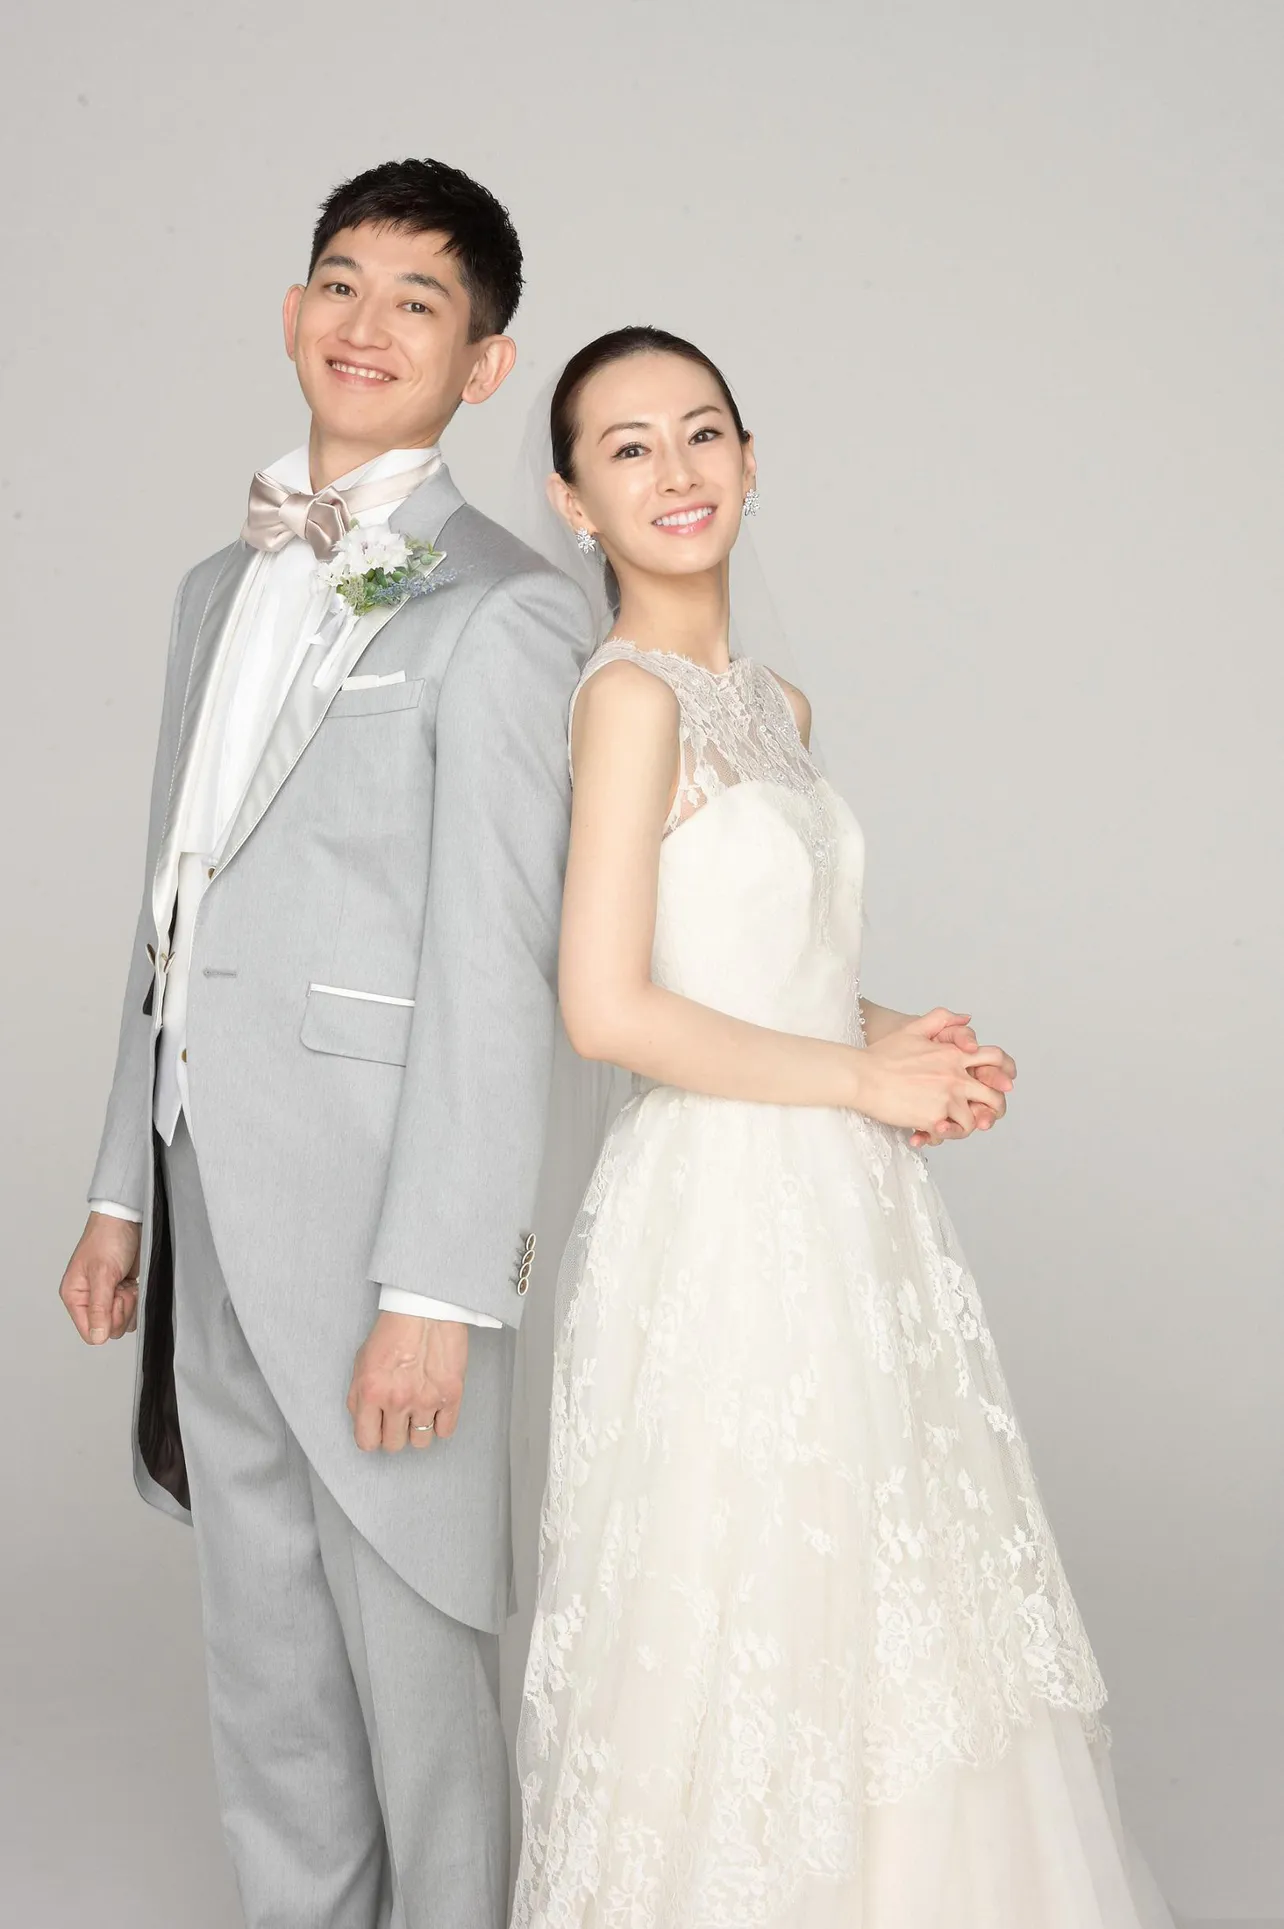 「リコカツ」でスピード結婚をした夫婦を演じる北川景子と永山瑛太